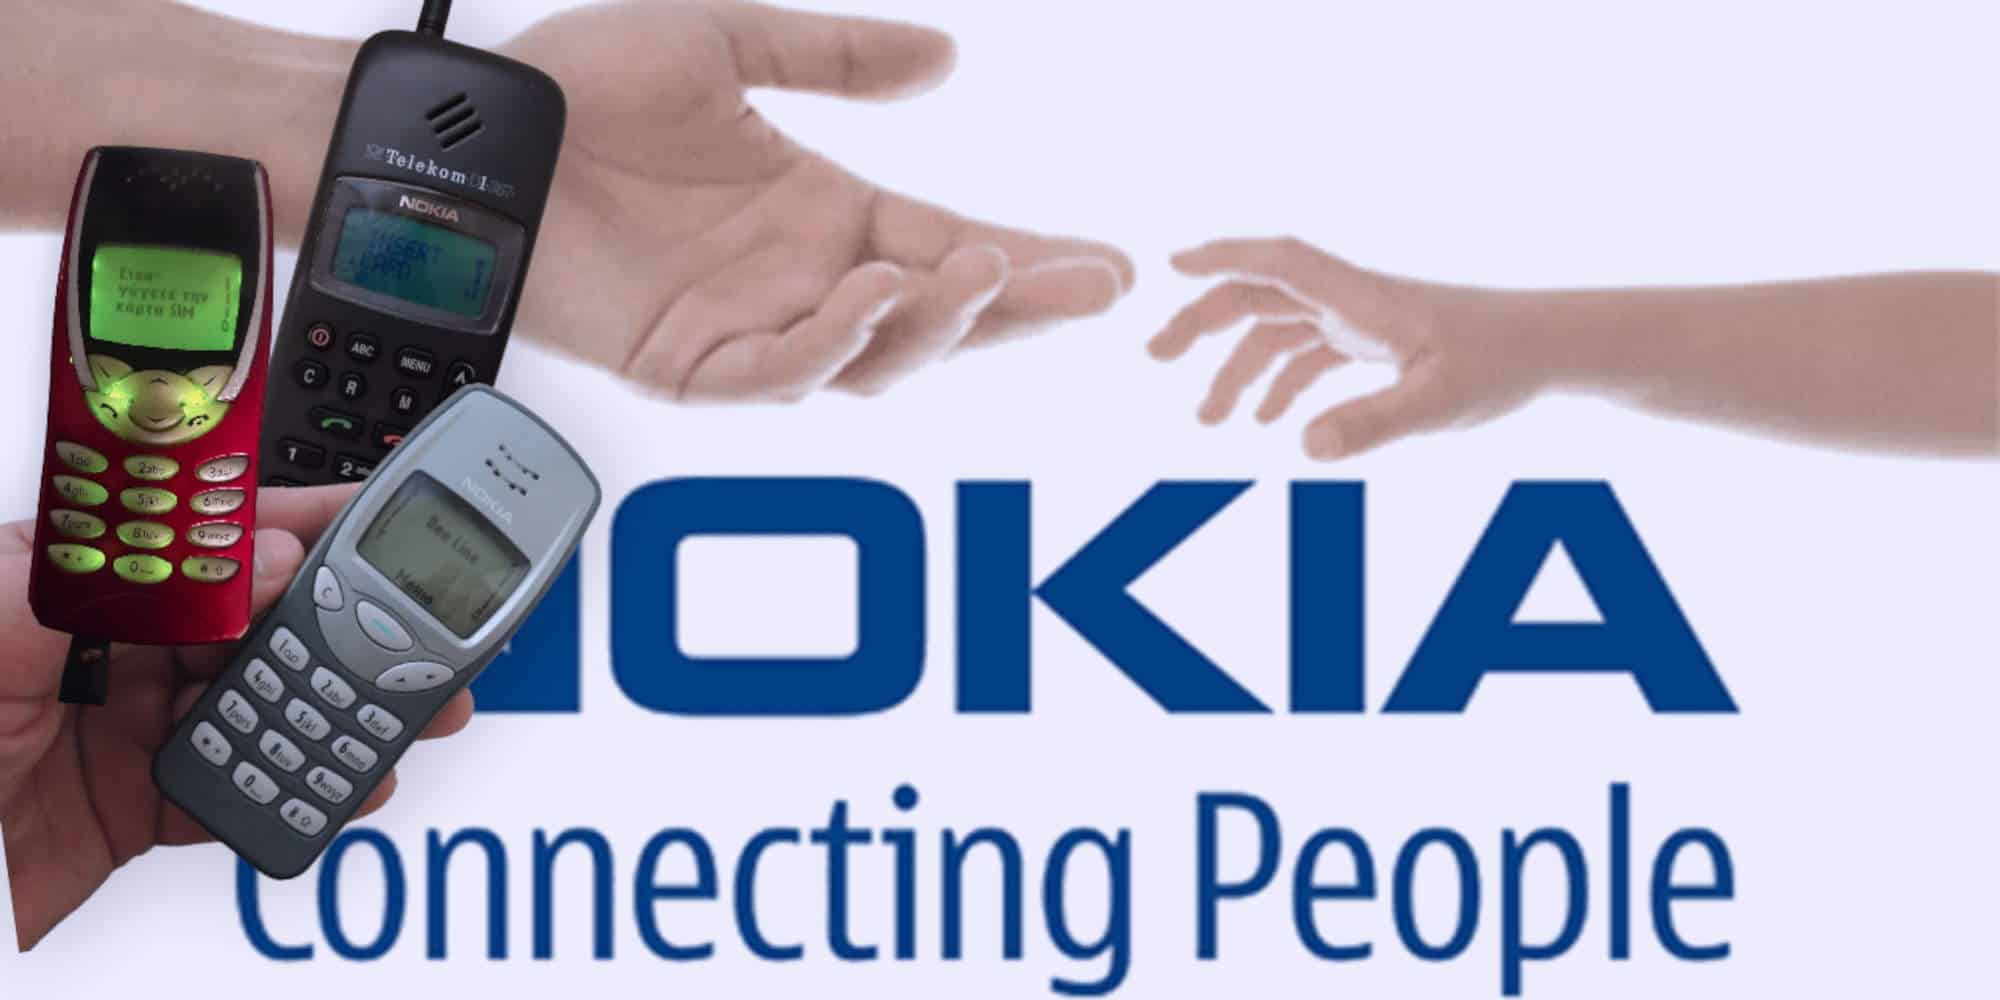 Θρυλικές συσκευές της Nokia από τα τέλη της δεκαετίας του '90